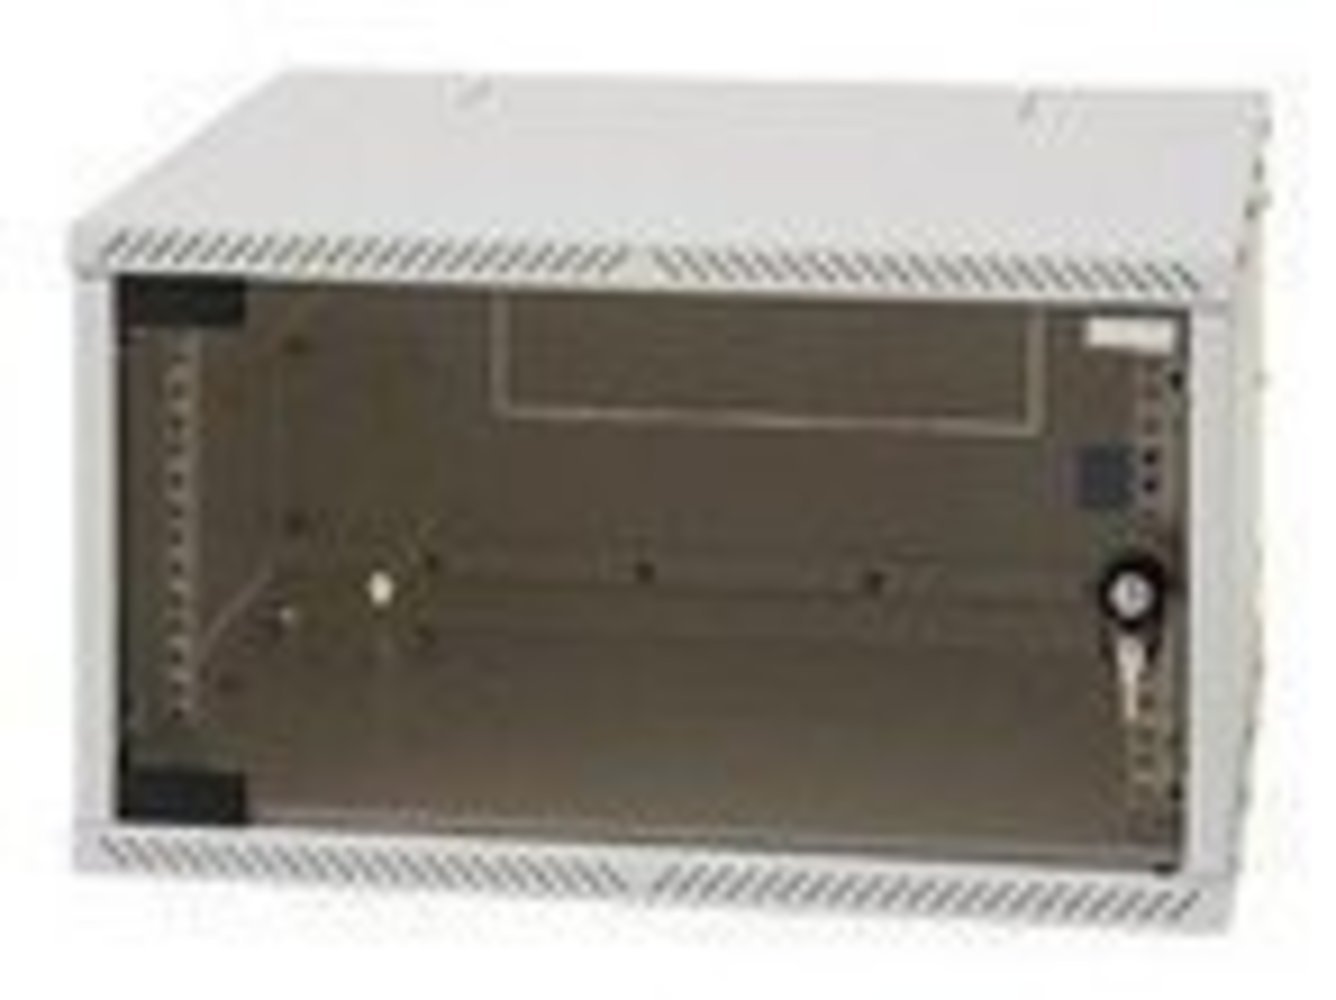 EQUIP TRITON 48.03cm 19 Zoll Wandverteiler 6HE - Box Flat Pack Gehäuse - BHT:550x320x400mm - Zerlegbar & kompakte Verpackung bis 25 KG